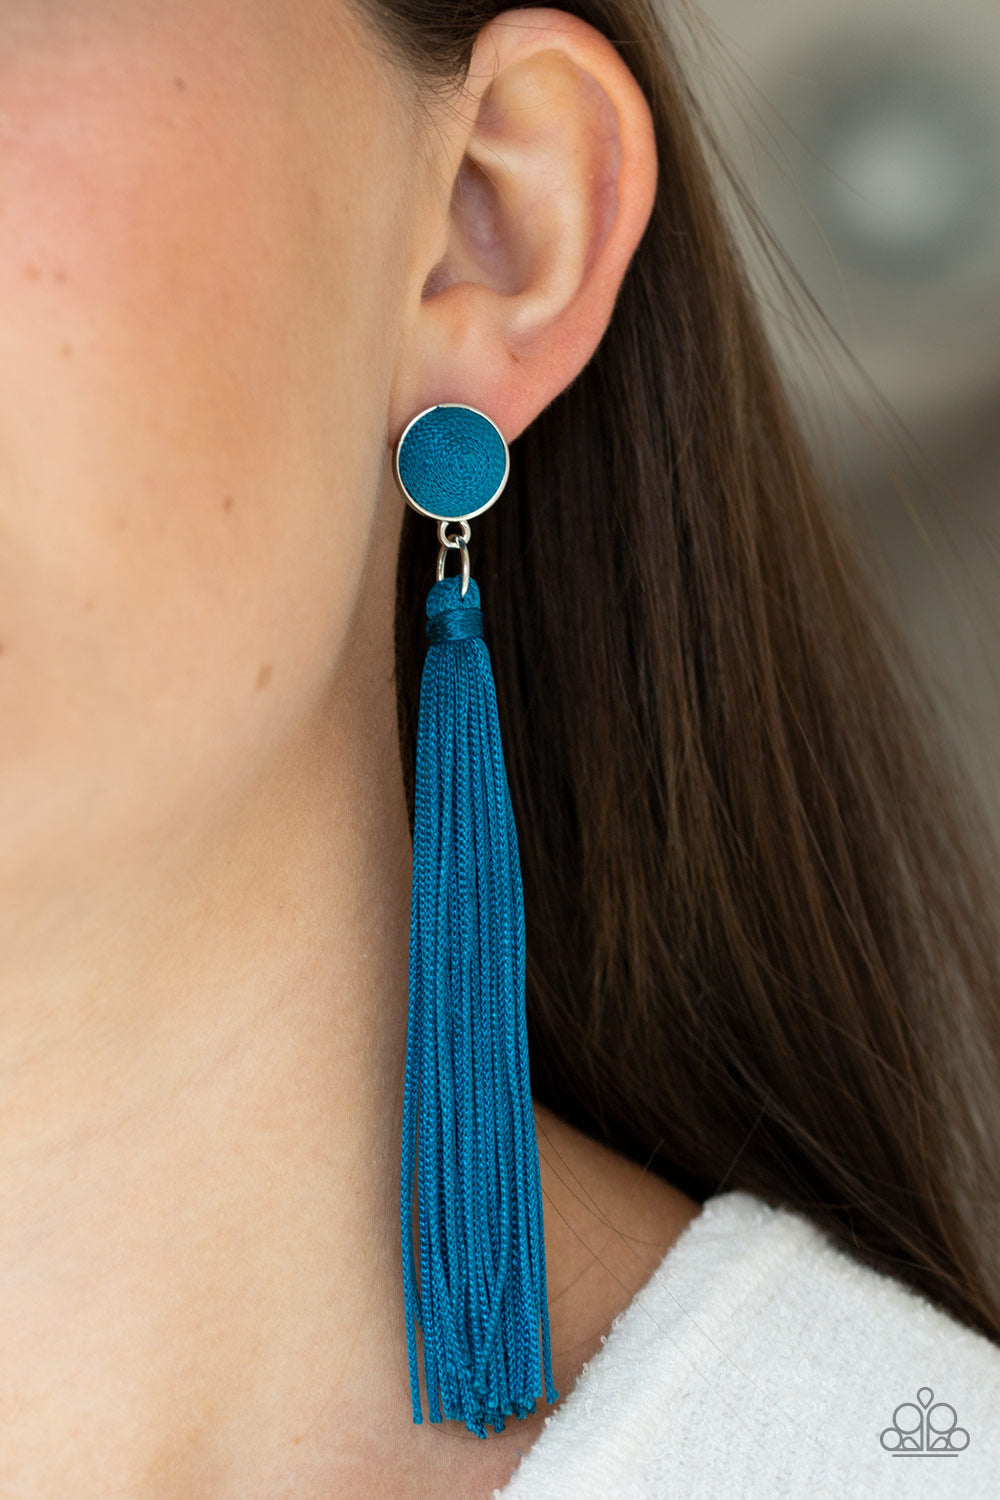 Tightrope Tassel - Blue tassel earrings